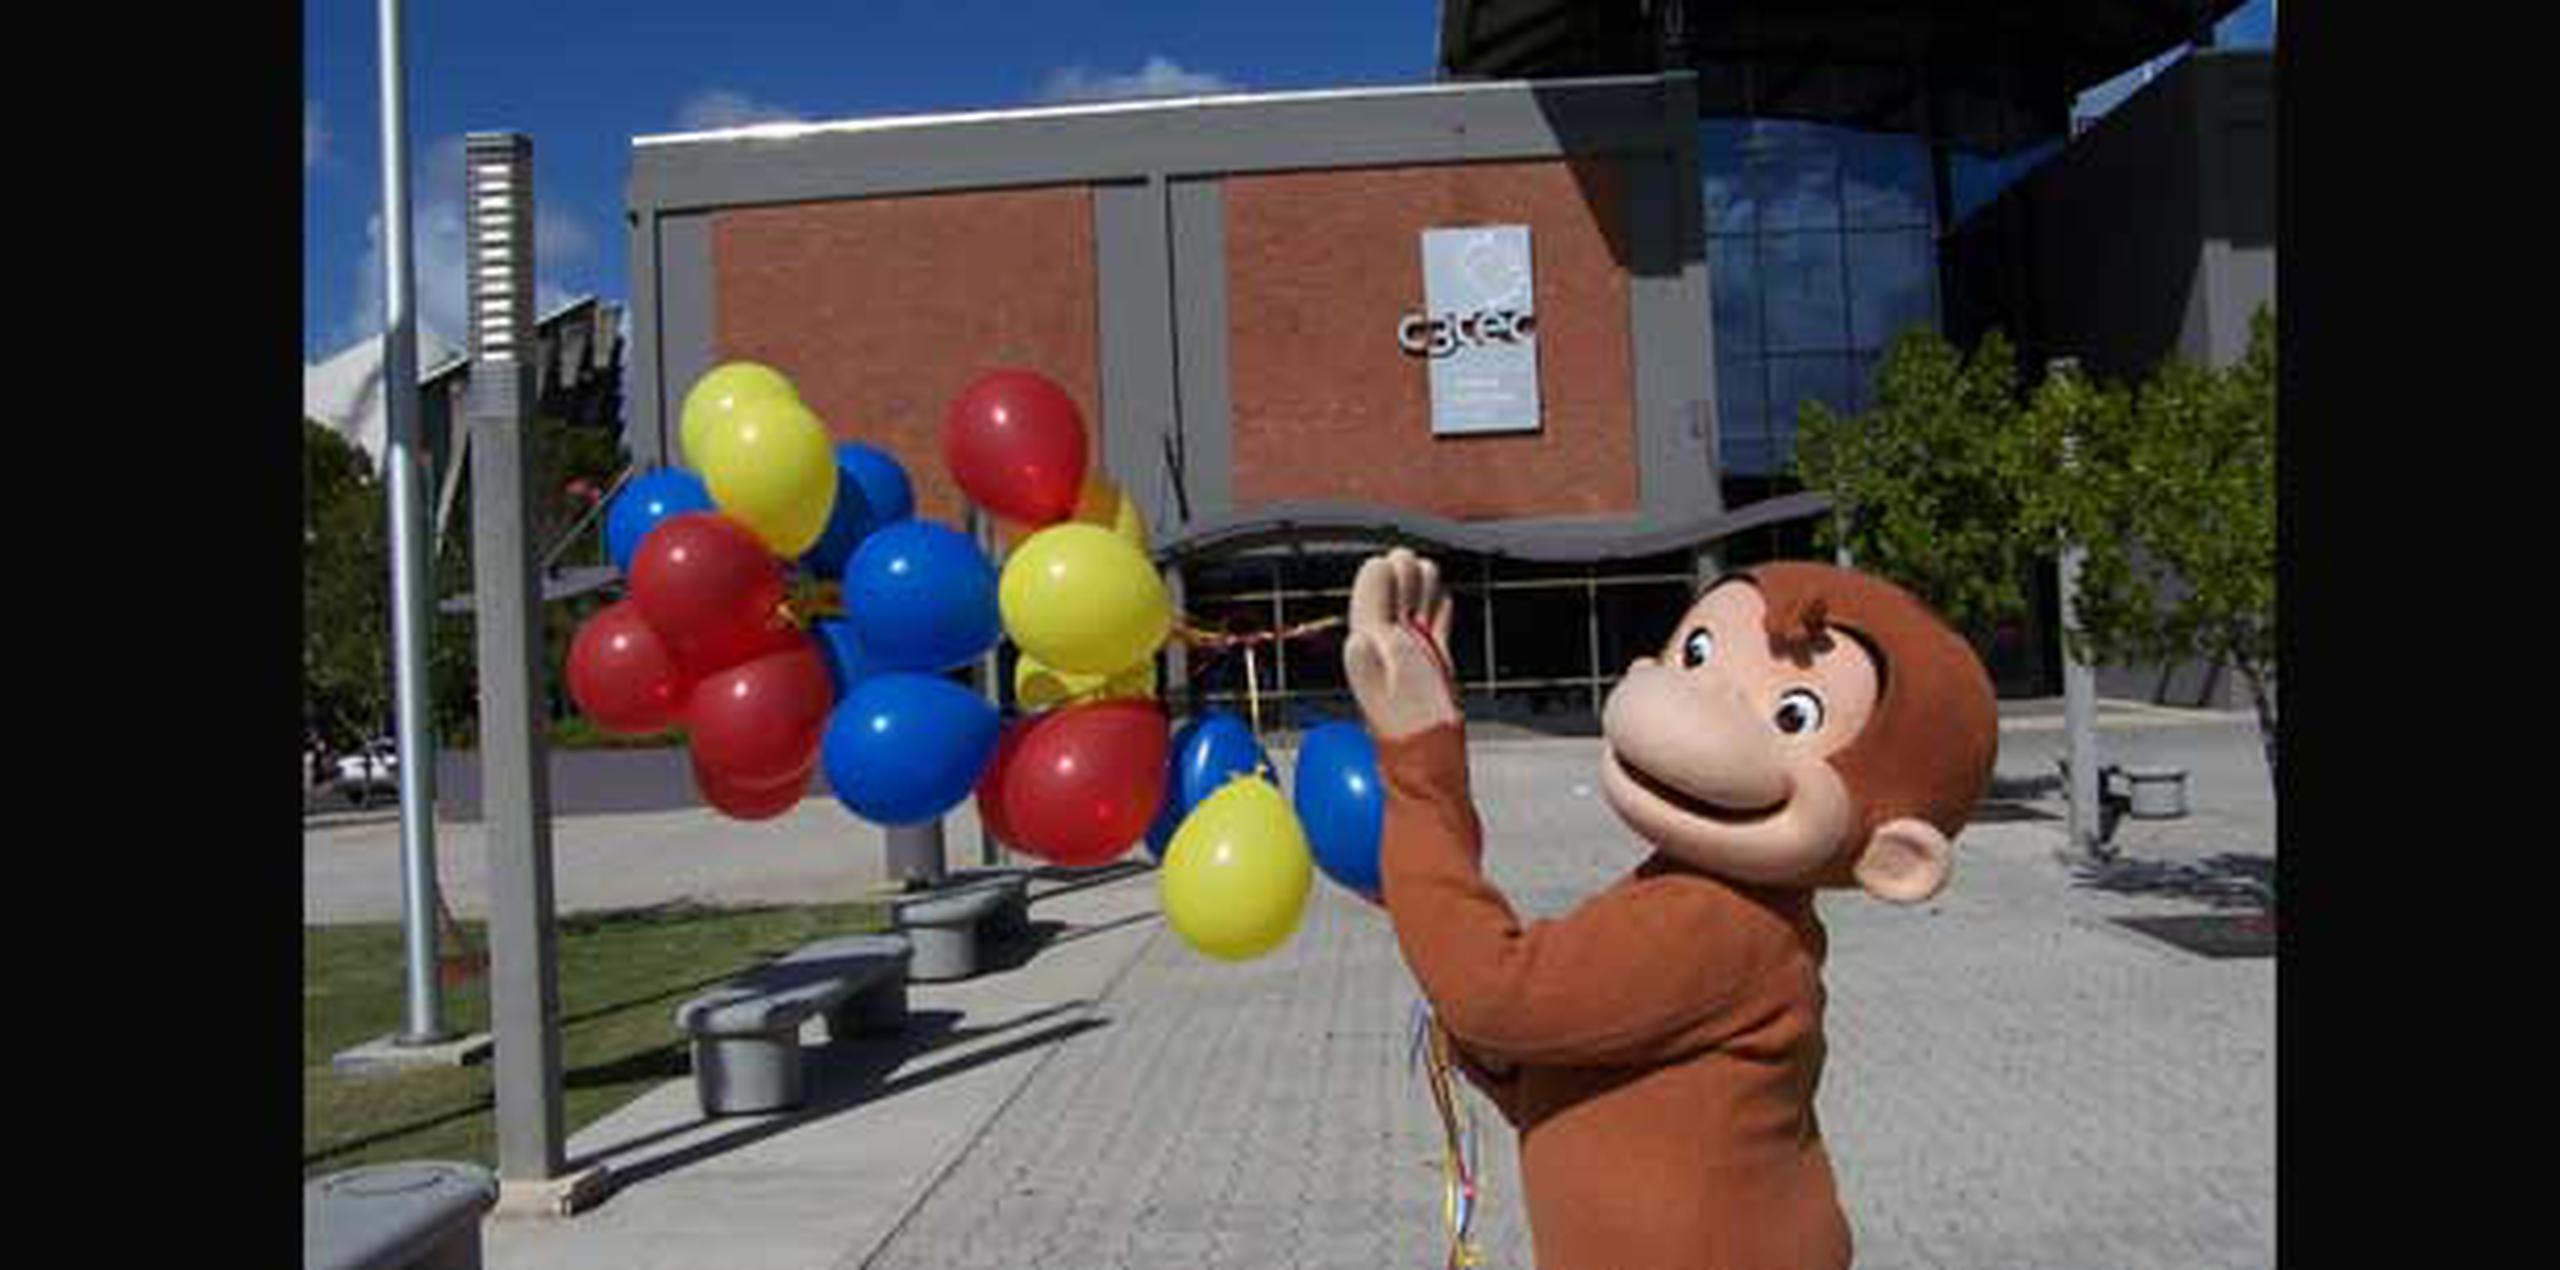 Miles de familias han visitado el C3Tec para el evento de Jorge el Curioso, el mono protagonista de la serie animada de televisión de PBS. (Suministrada)